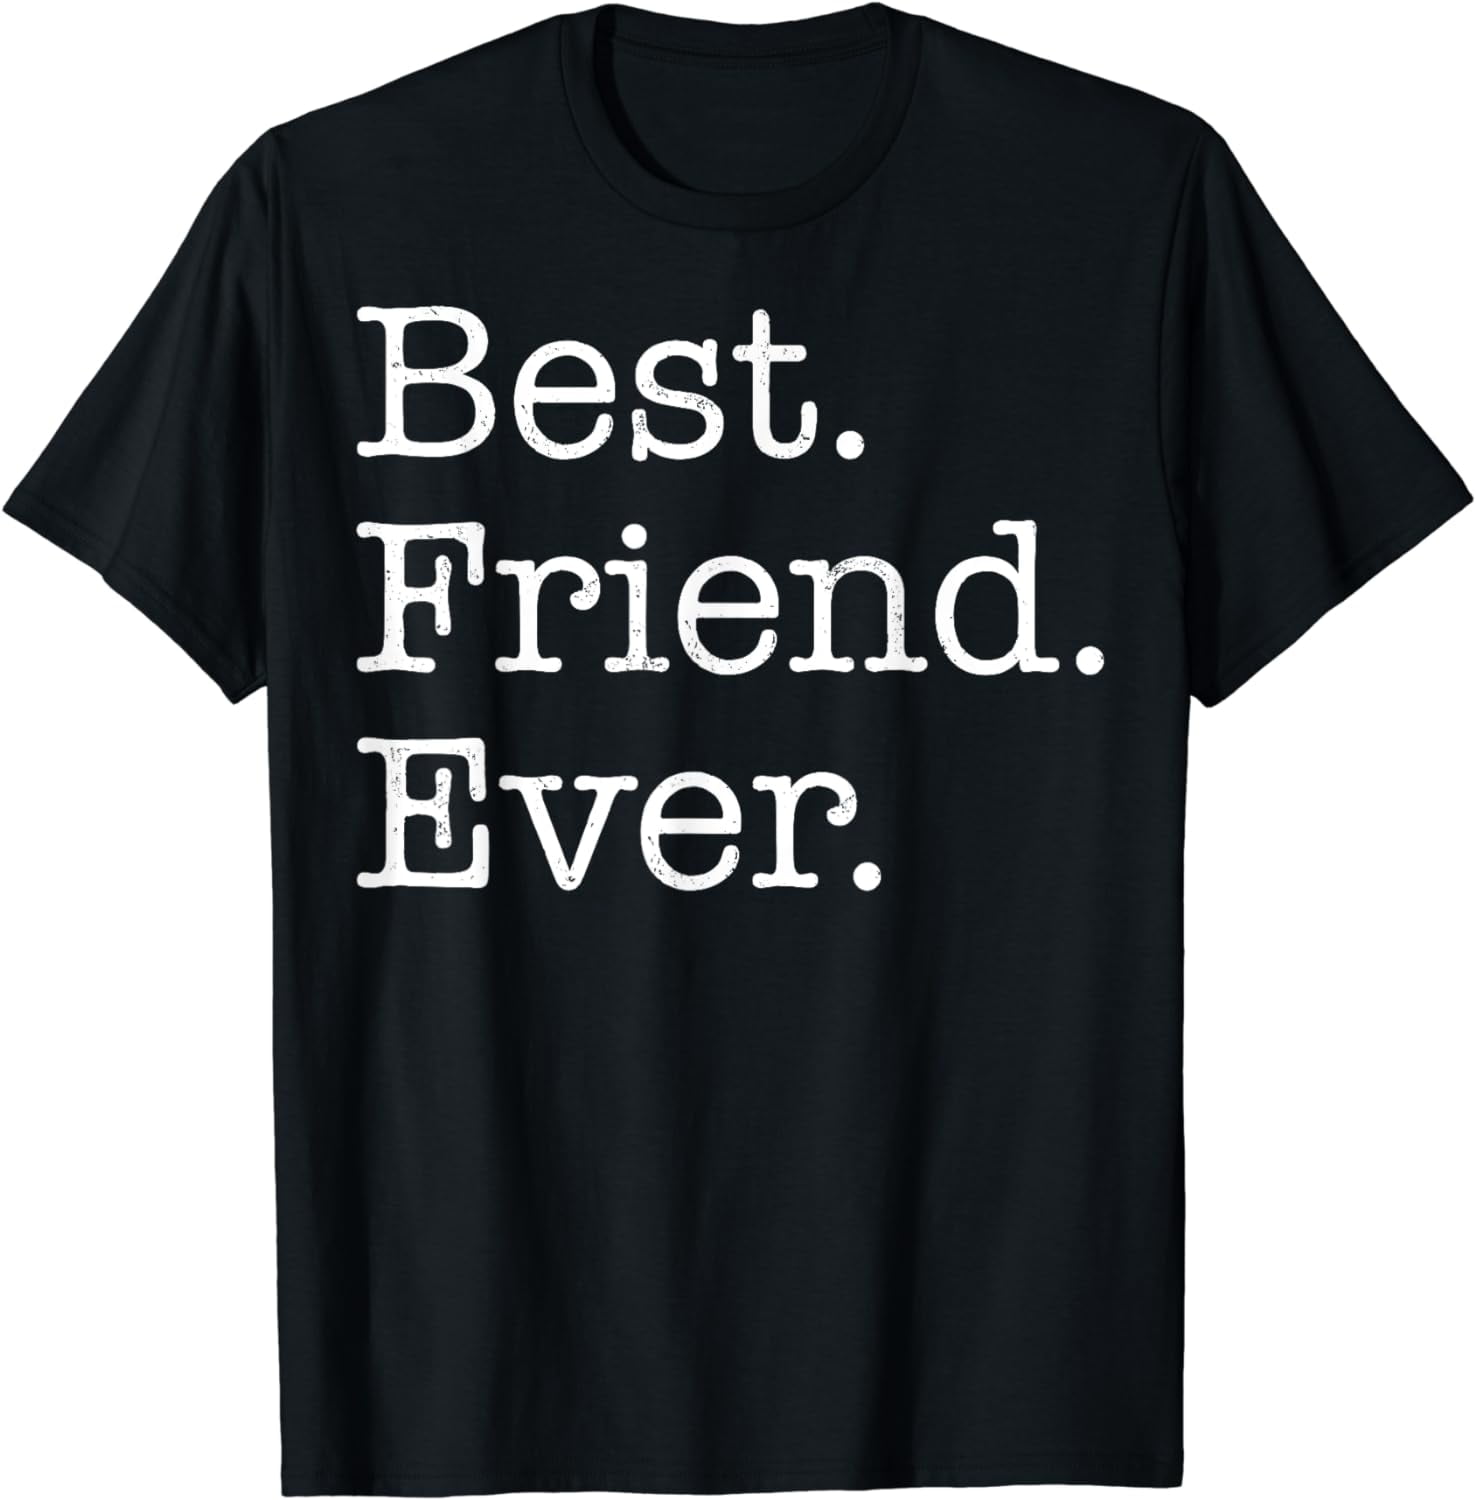 Best Friend Ever T-Shirt - Walmart.com